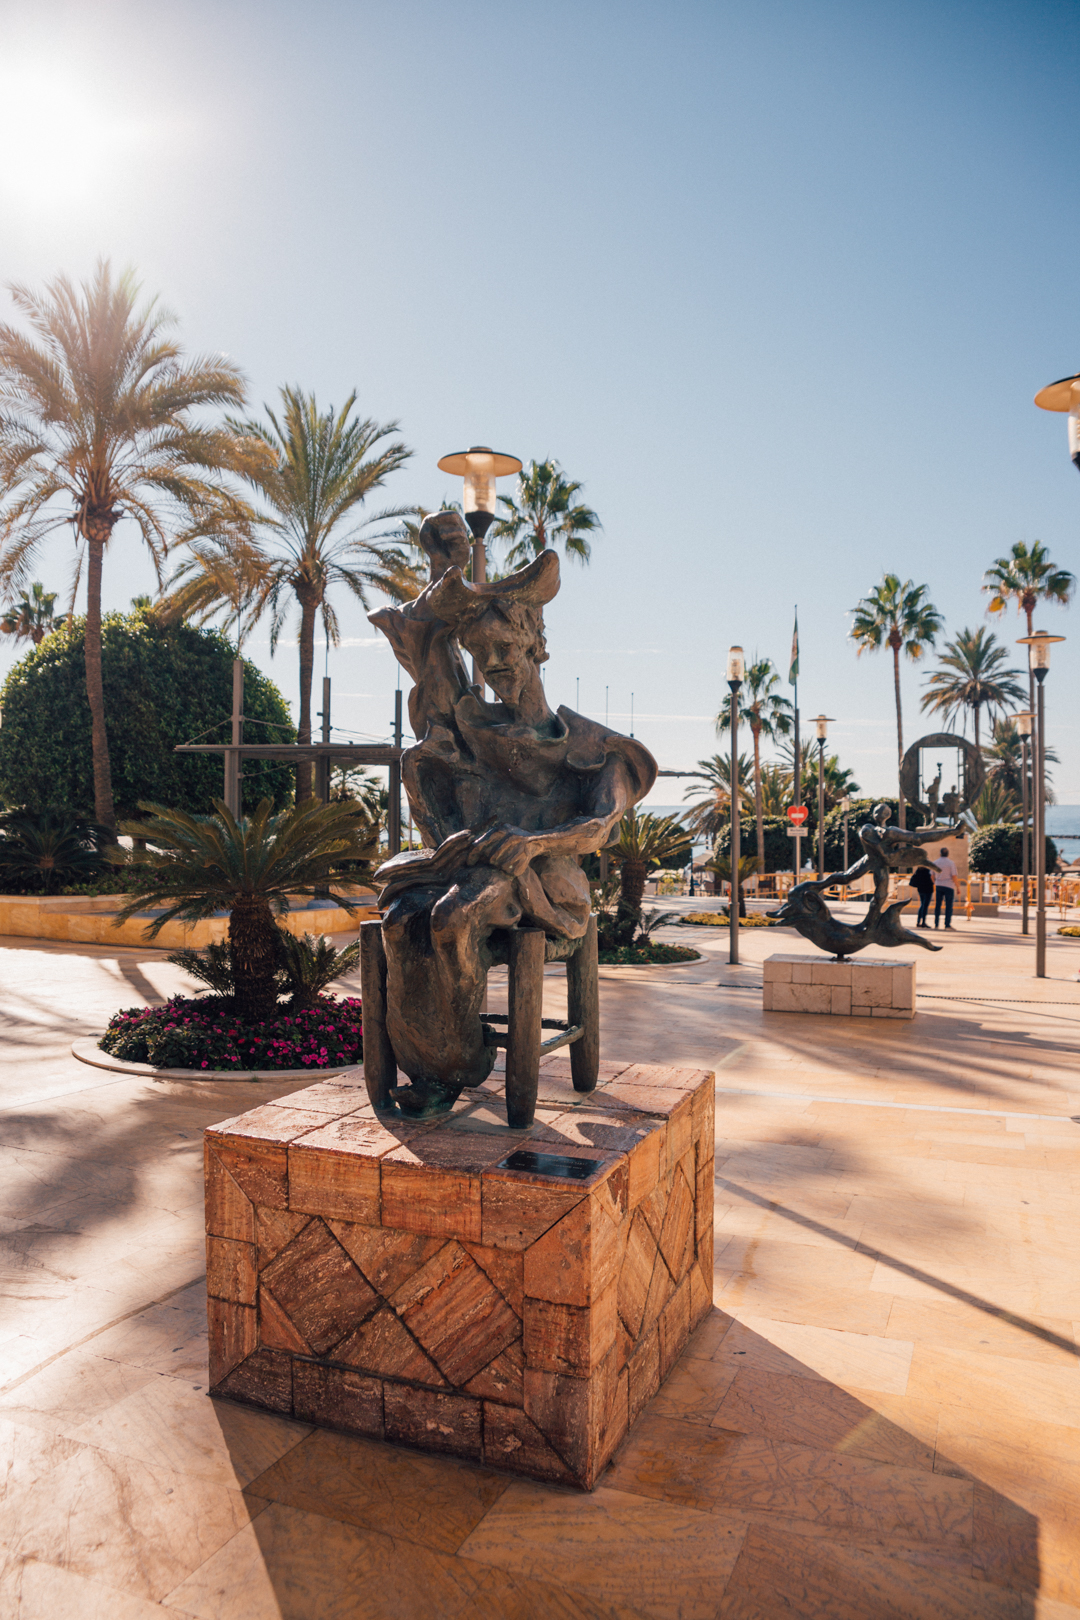 Dahli statues near Parque de la Alameda, Marbella, Spain